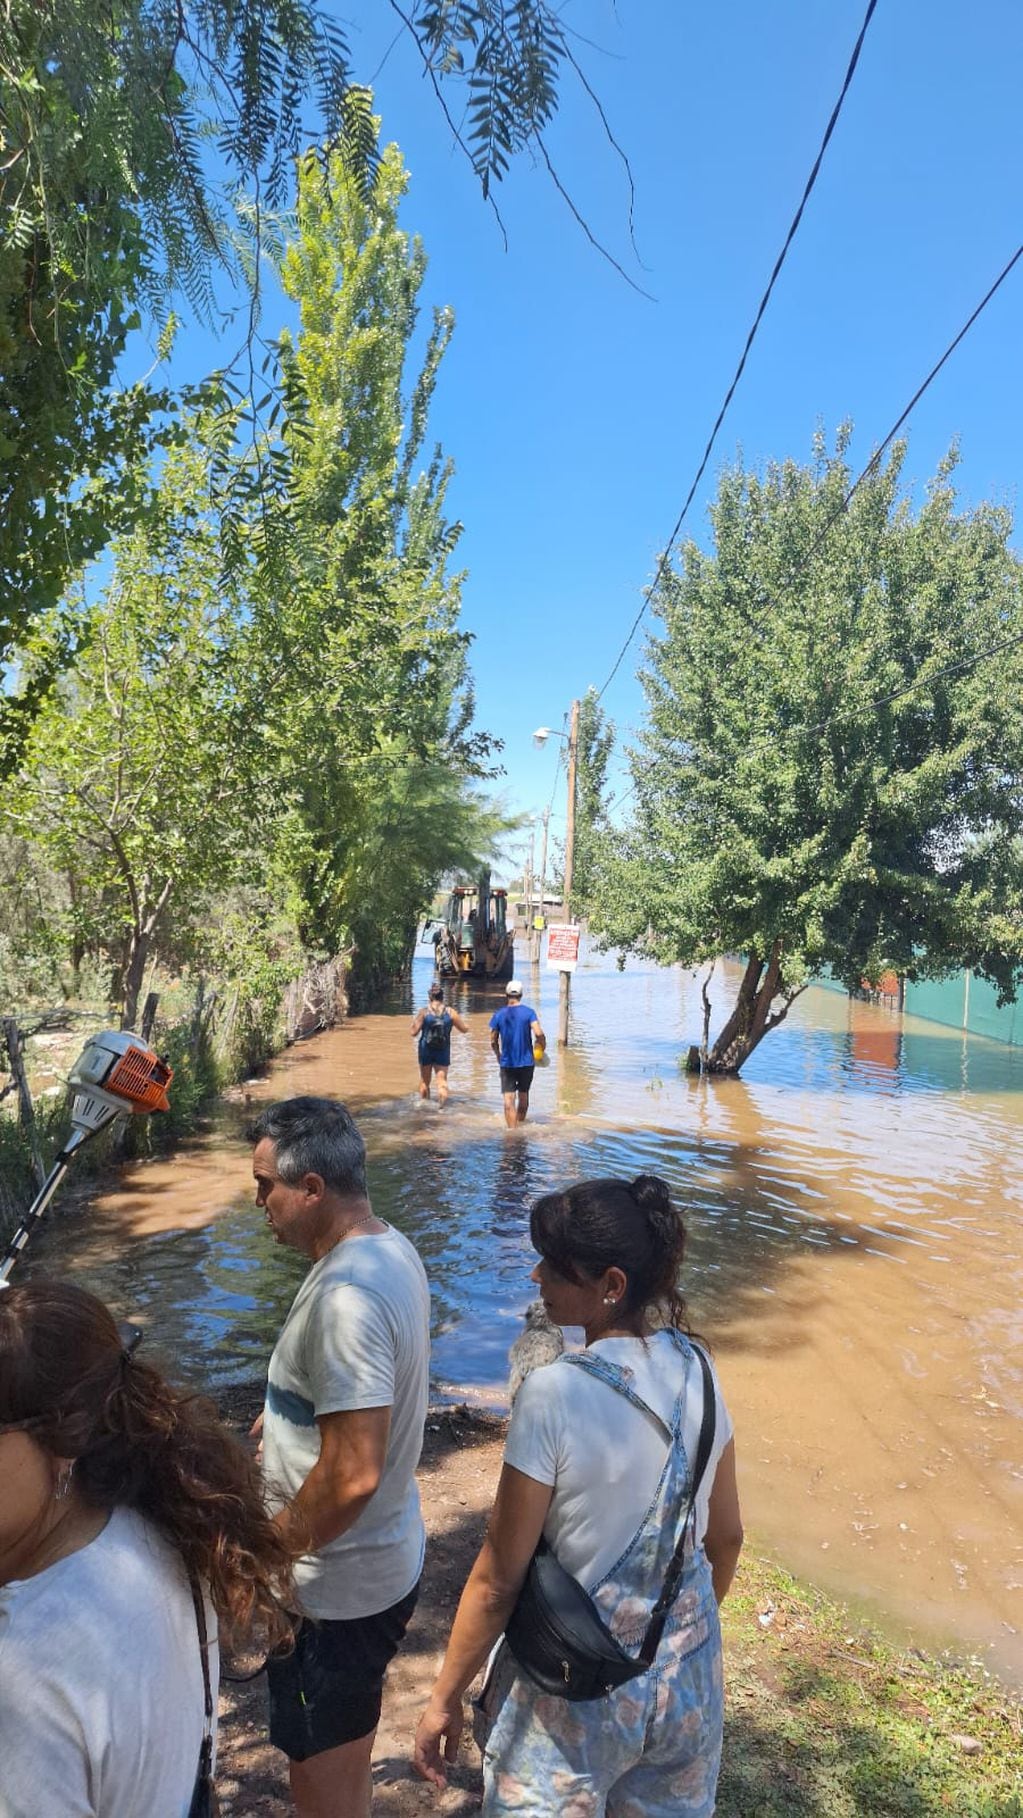 Desoladoras imágenes: una nueva crecida del Río Mendoza que obligó a vecinos de Maipú a evacuar sus casas. Foto: gentileza vecinos Rincón de los Álamos